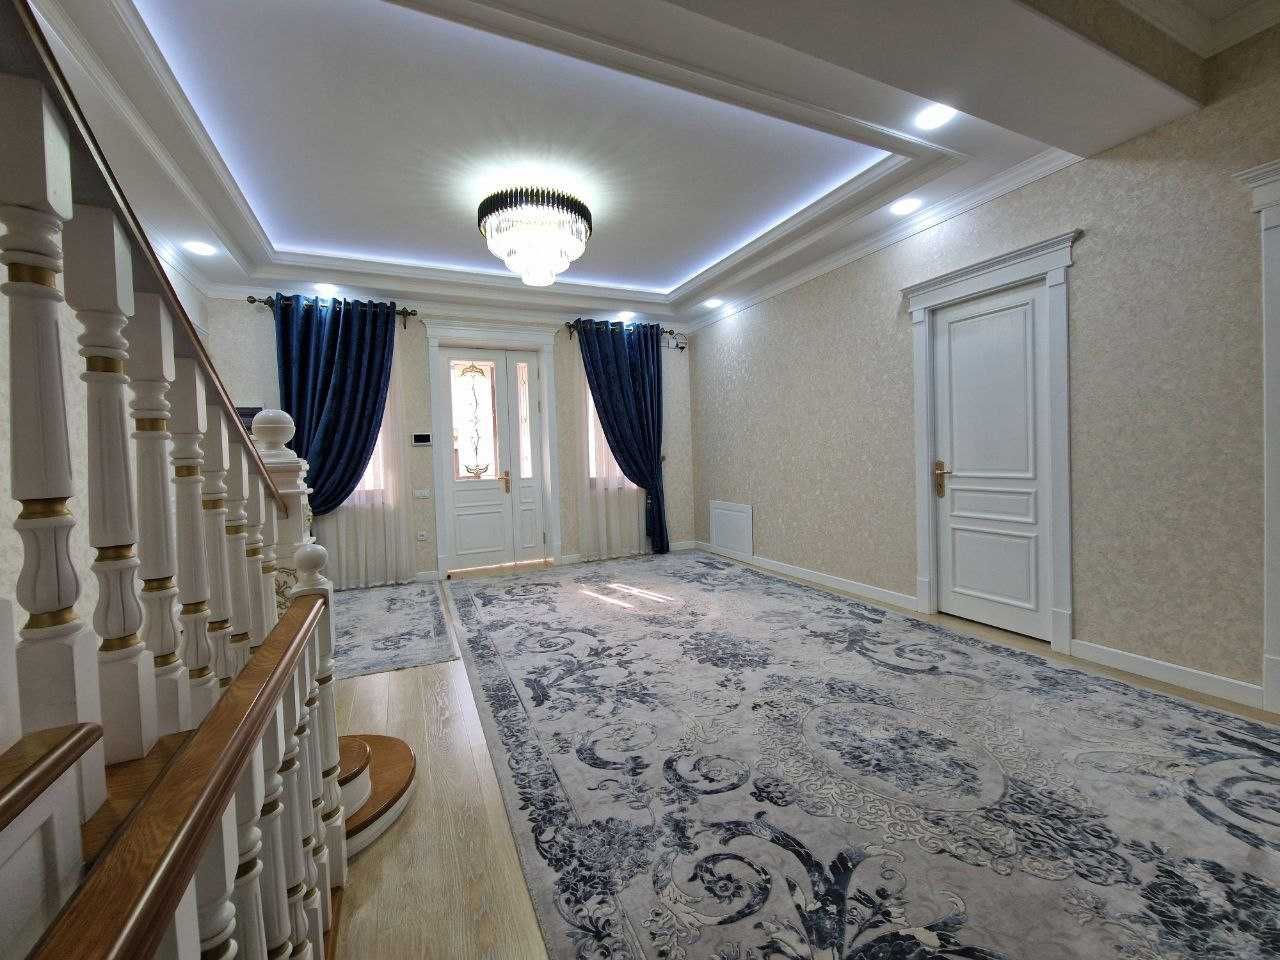 Продаётся эксклюзивный 2-этажный дом с роскошным ремонтом.#naka